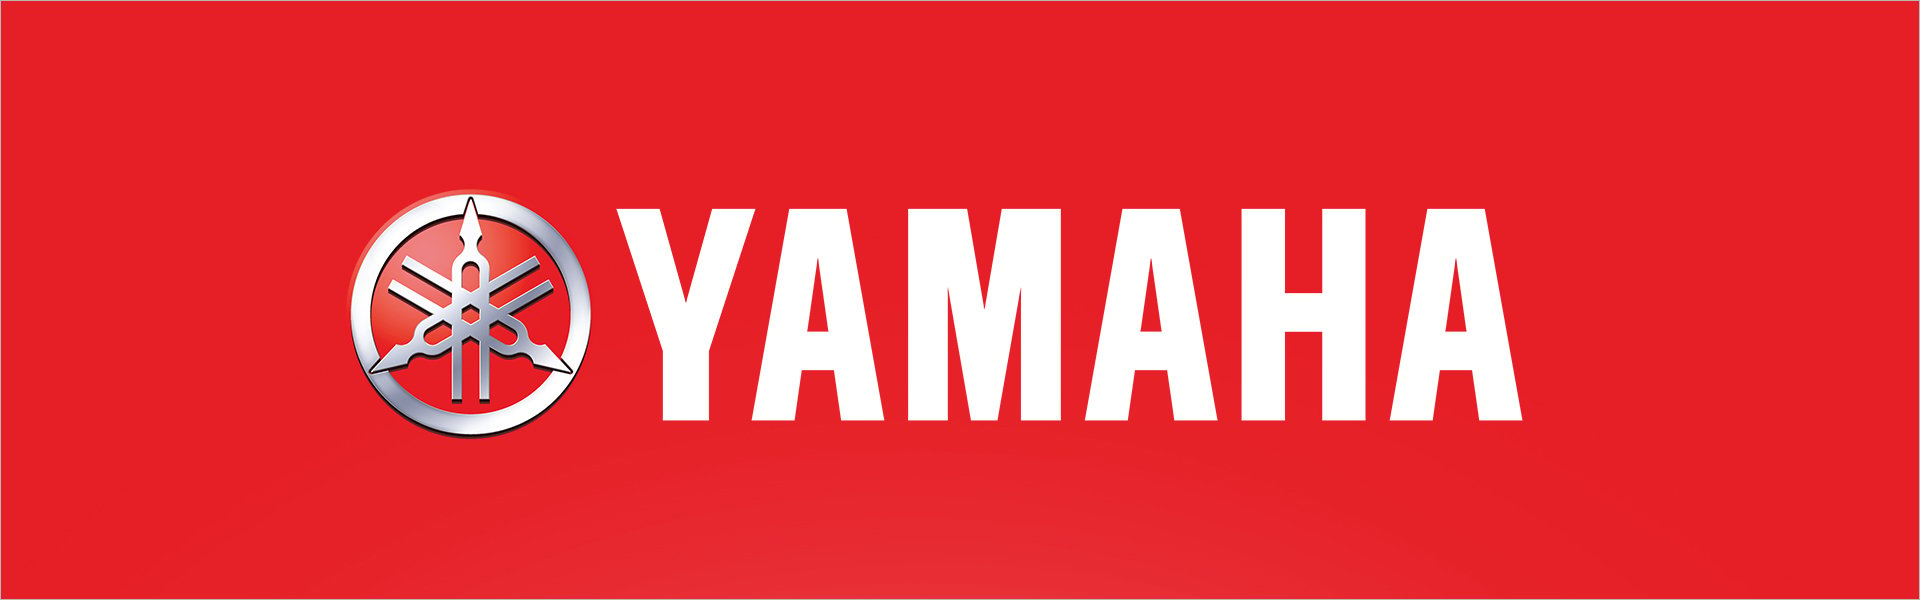 Yamaha MG10 Yamaha